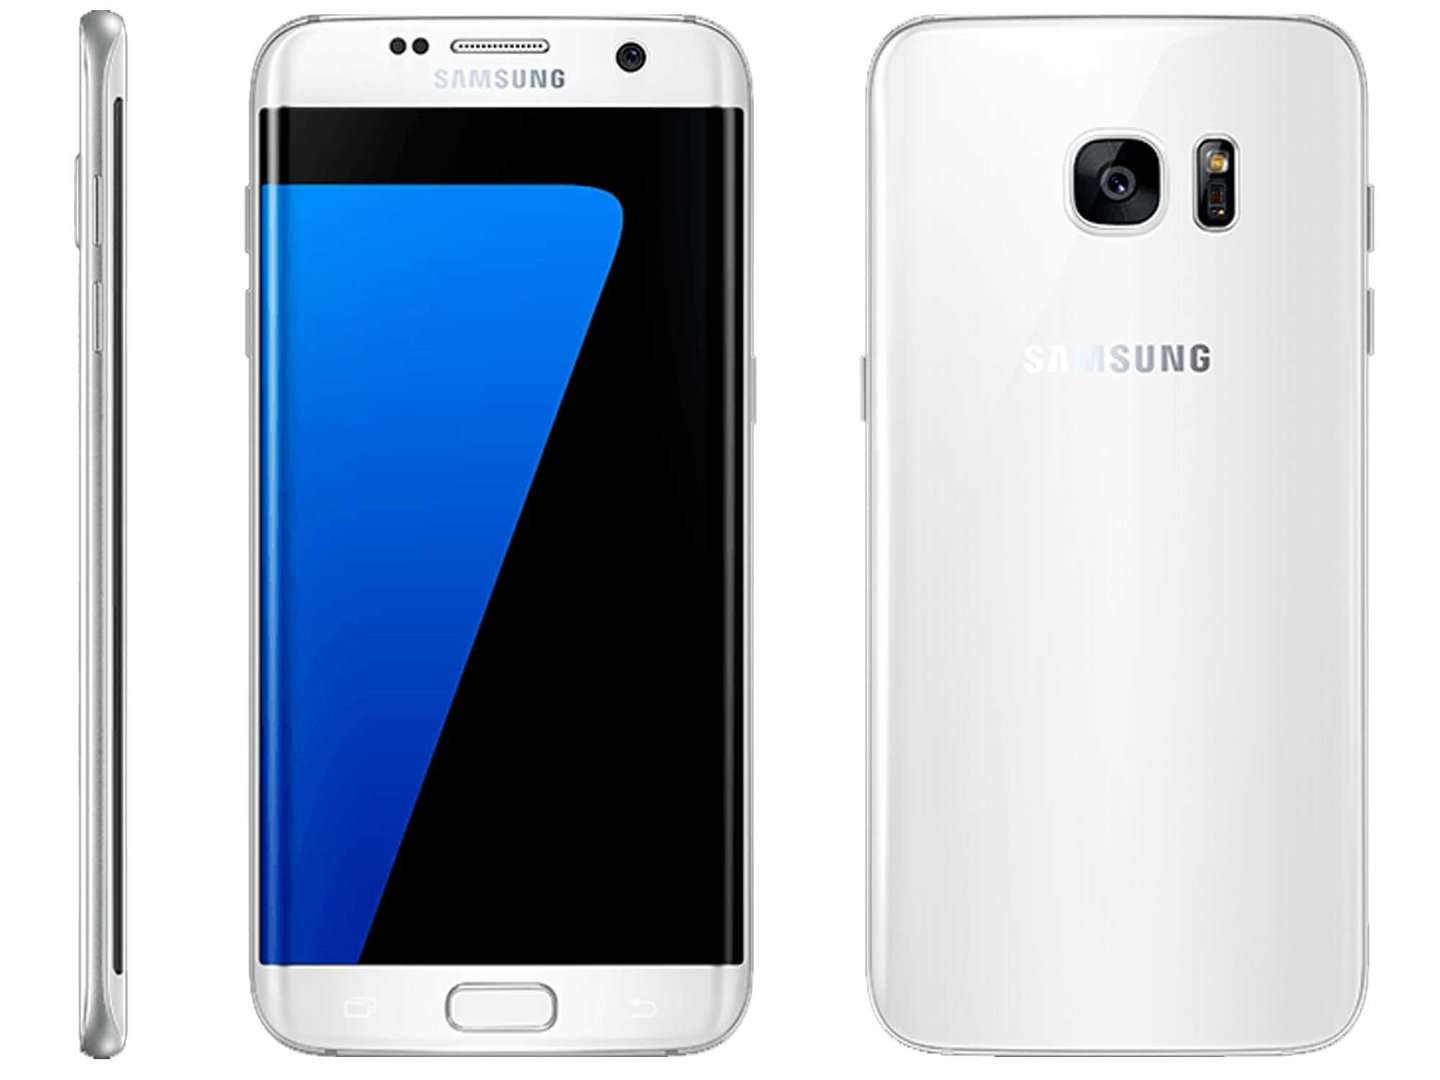 Compare Samsung Galaxy S7 vs. Samsung Galaxy S7 edge